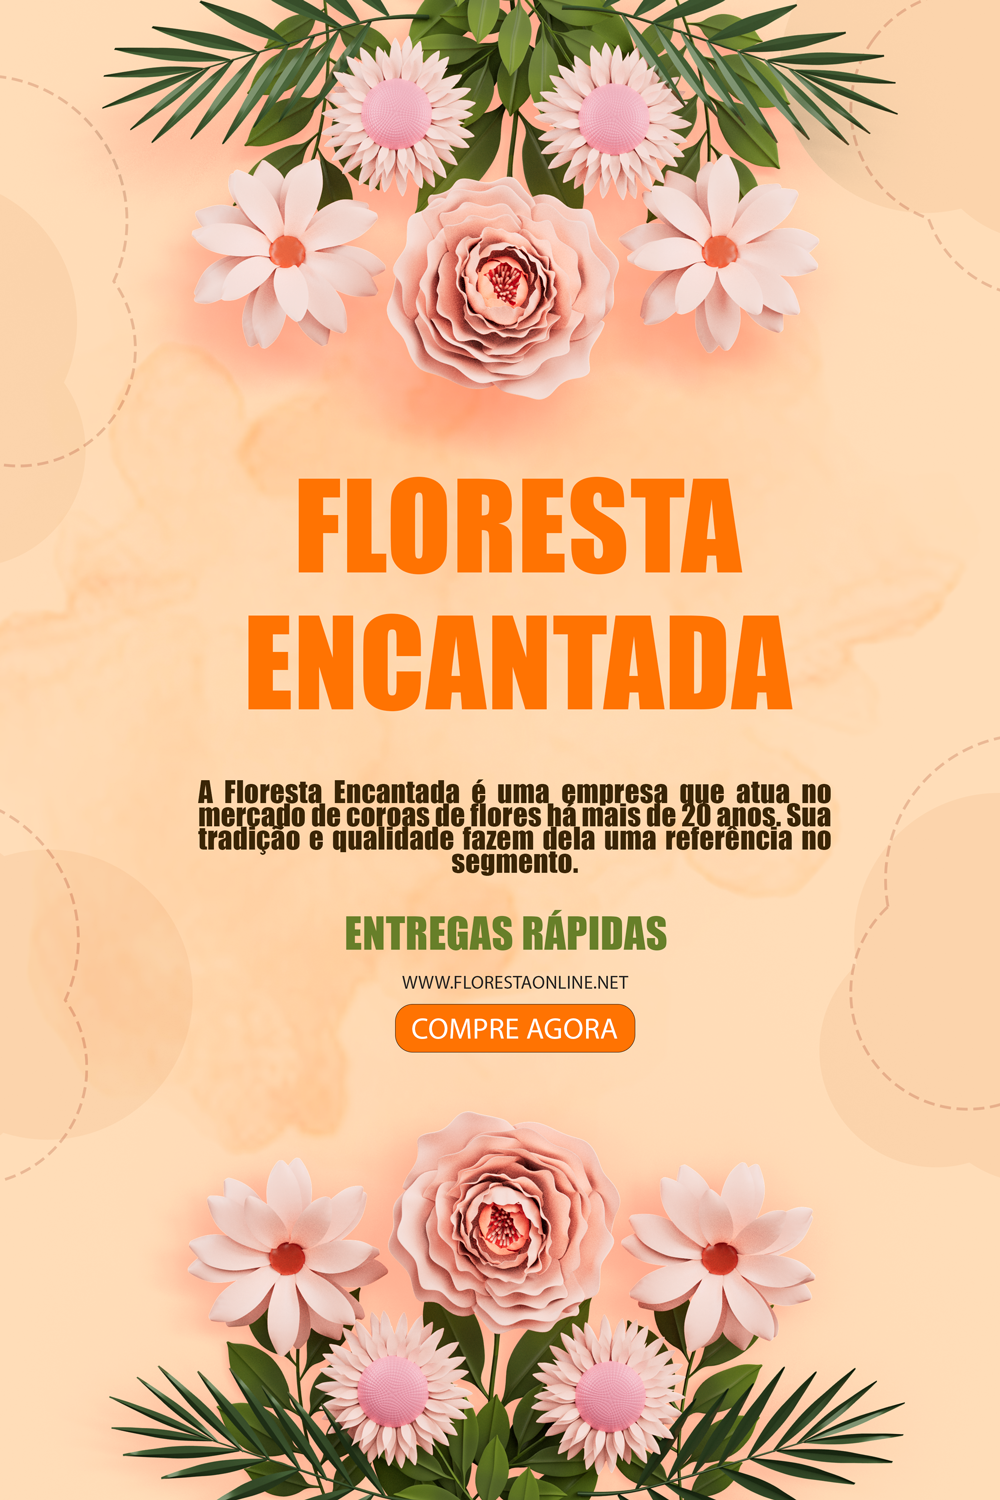 Floricultura Floresta Encantada - Entrega rápida de coroas de flores na zona leste